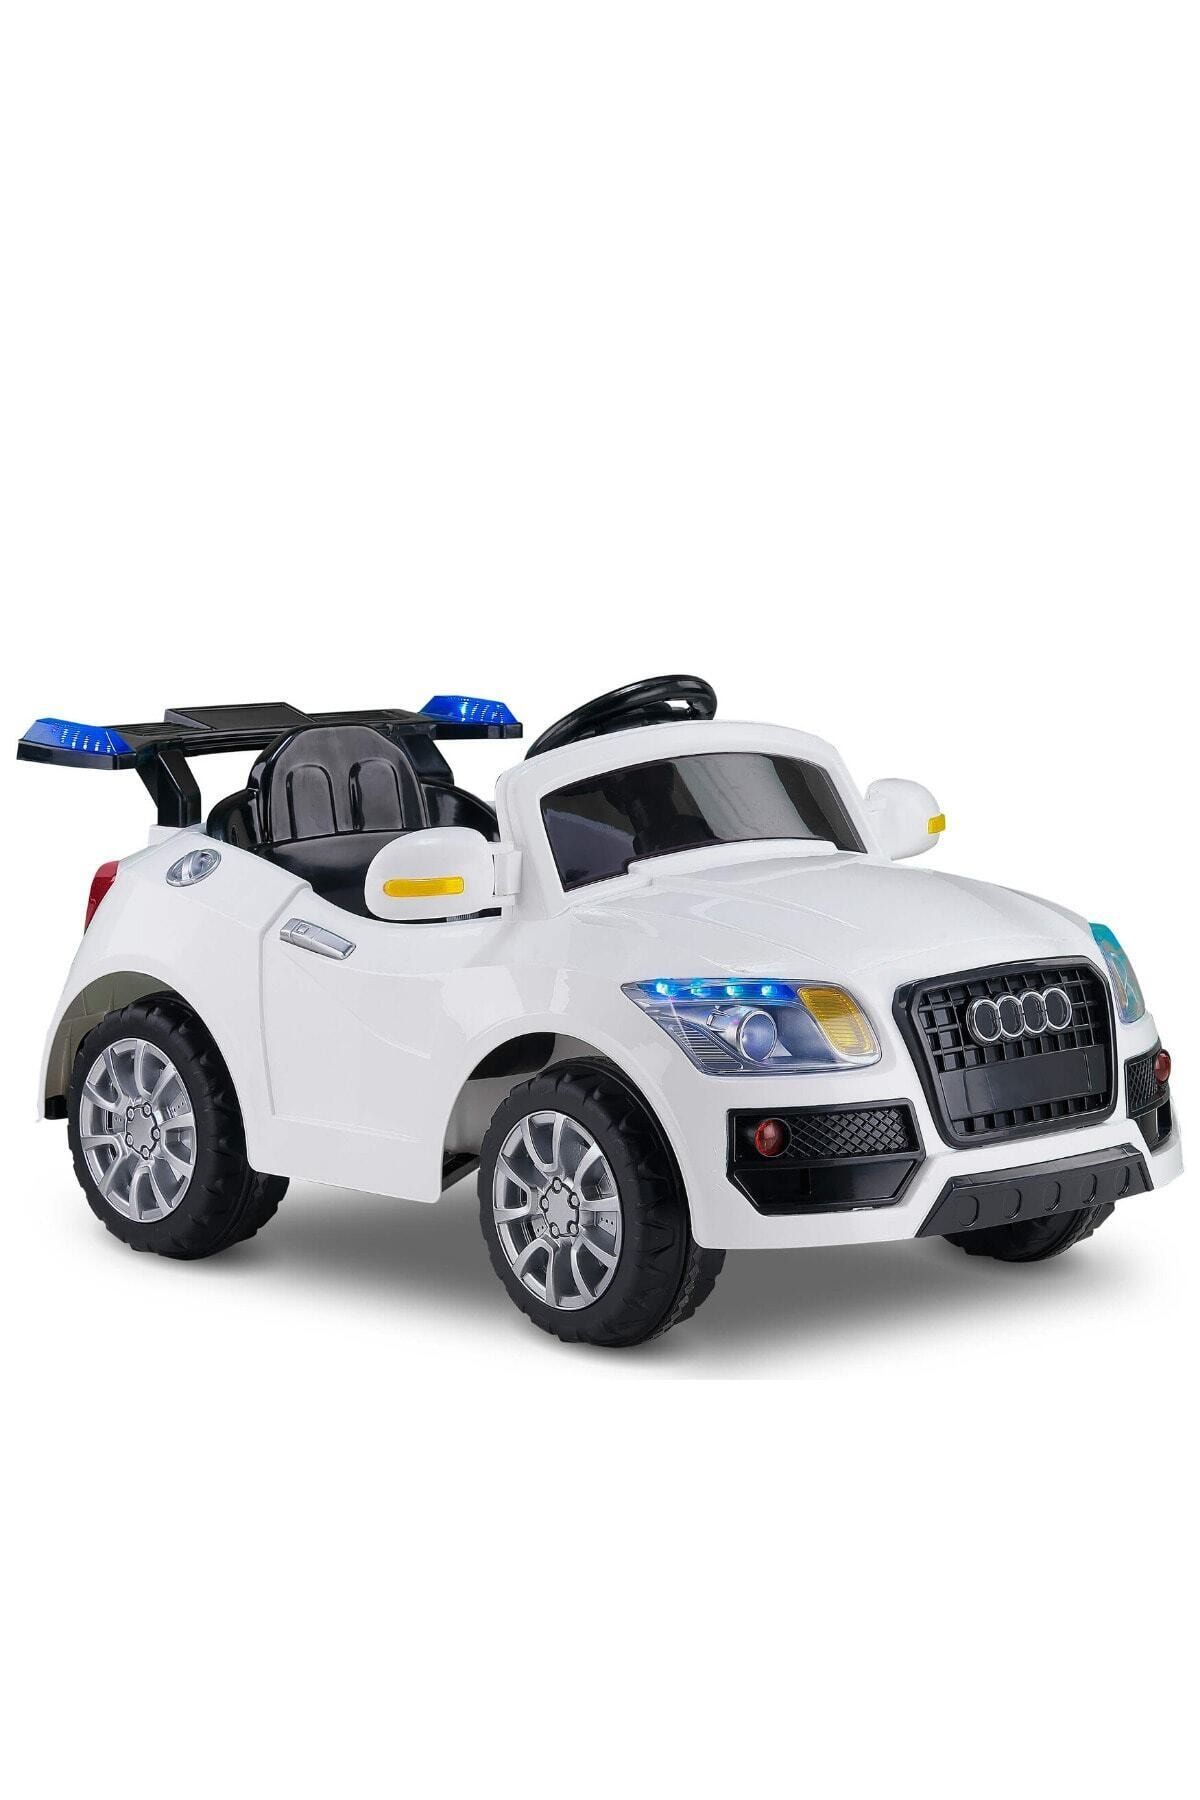 Babyhope Audı Model Akülü Araba Beyaz 436- E-drıve5